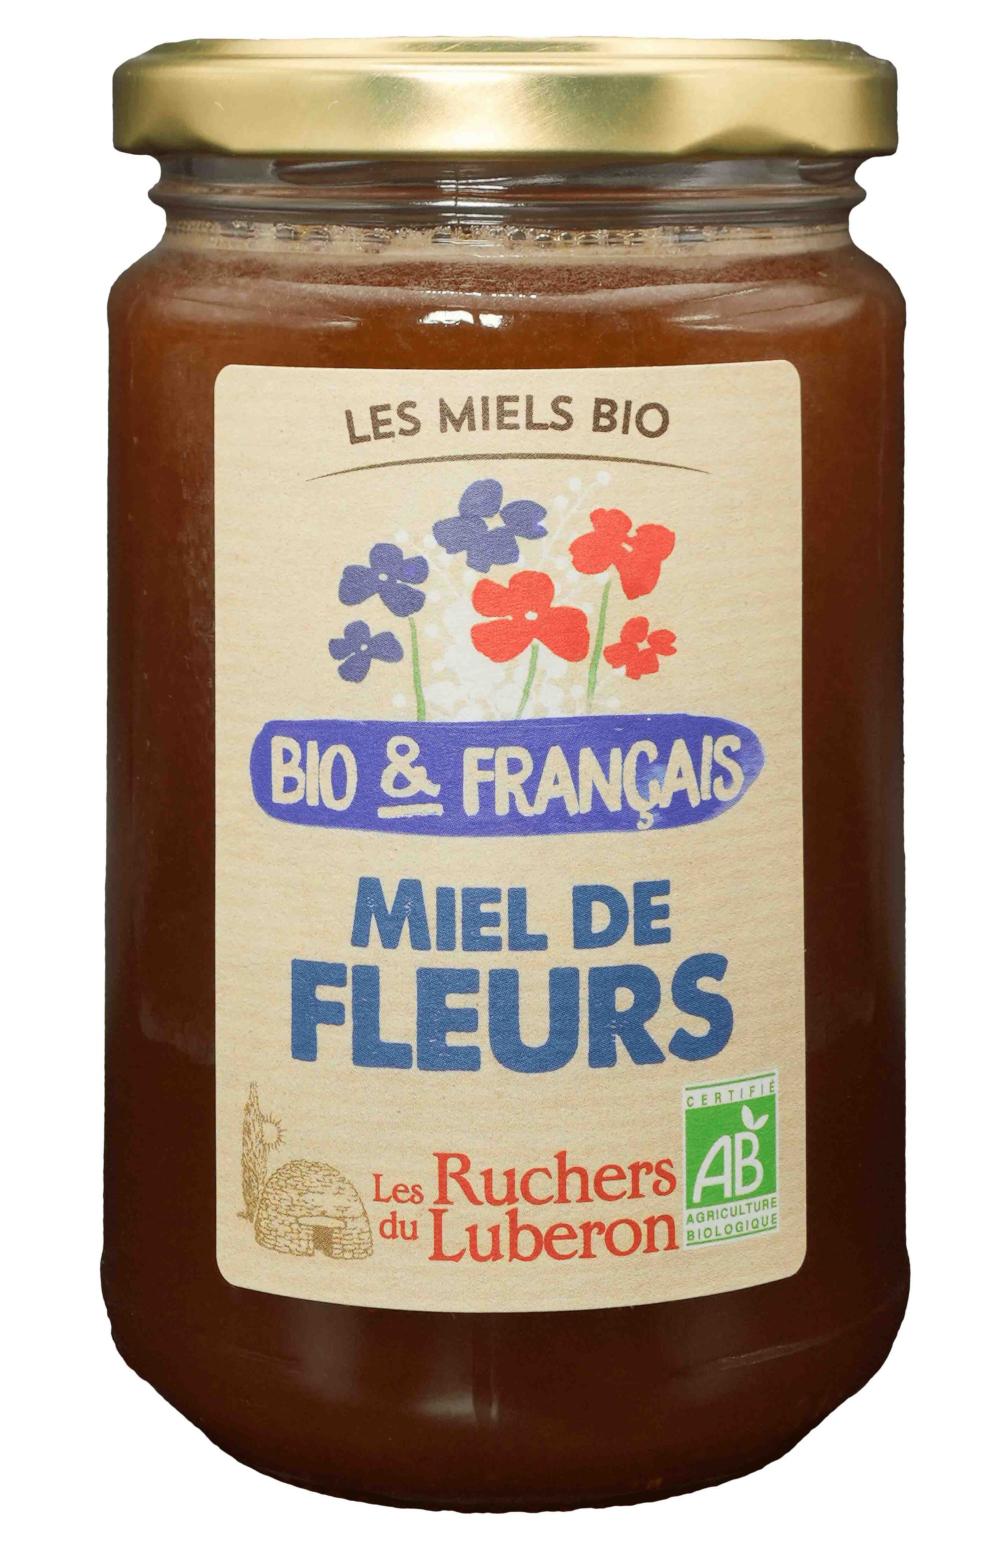 Miel de fleurs bio et francais